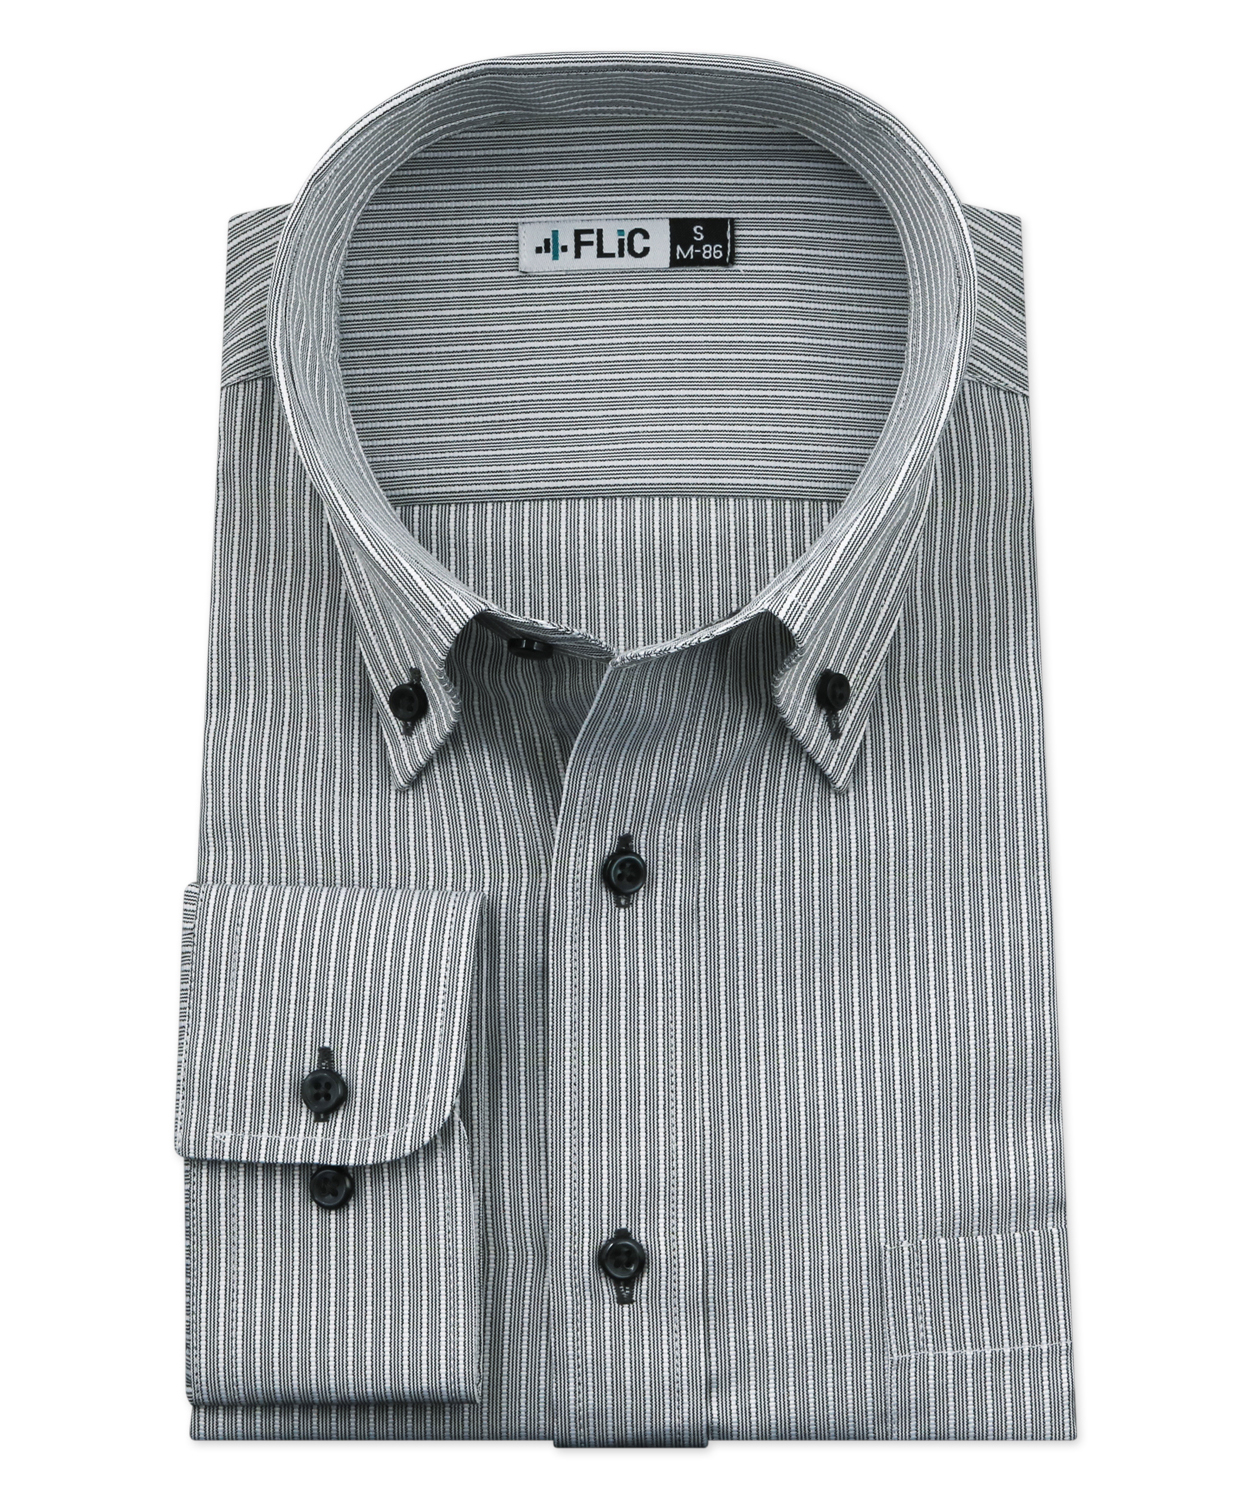 ワイシャツ メンズ ボタンダウン 長袖 形態安定 シャツ ドレスシャツ ビジネス ノーマル スリム yシャツ カッターシャツ 定番 ストライプ ドビー  織柄 お(503079238) | フリック(FLiC) - MAGASEEK